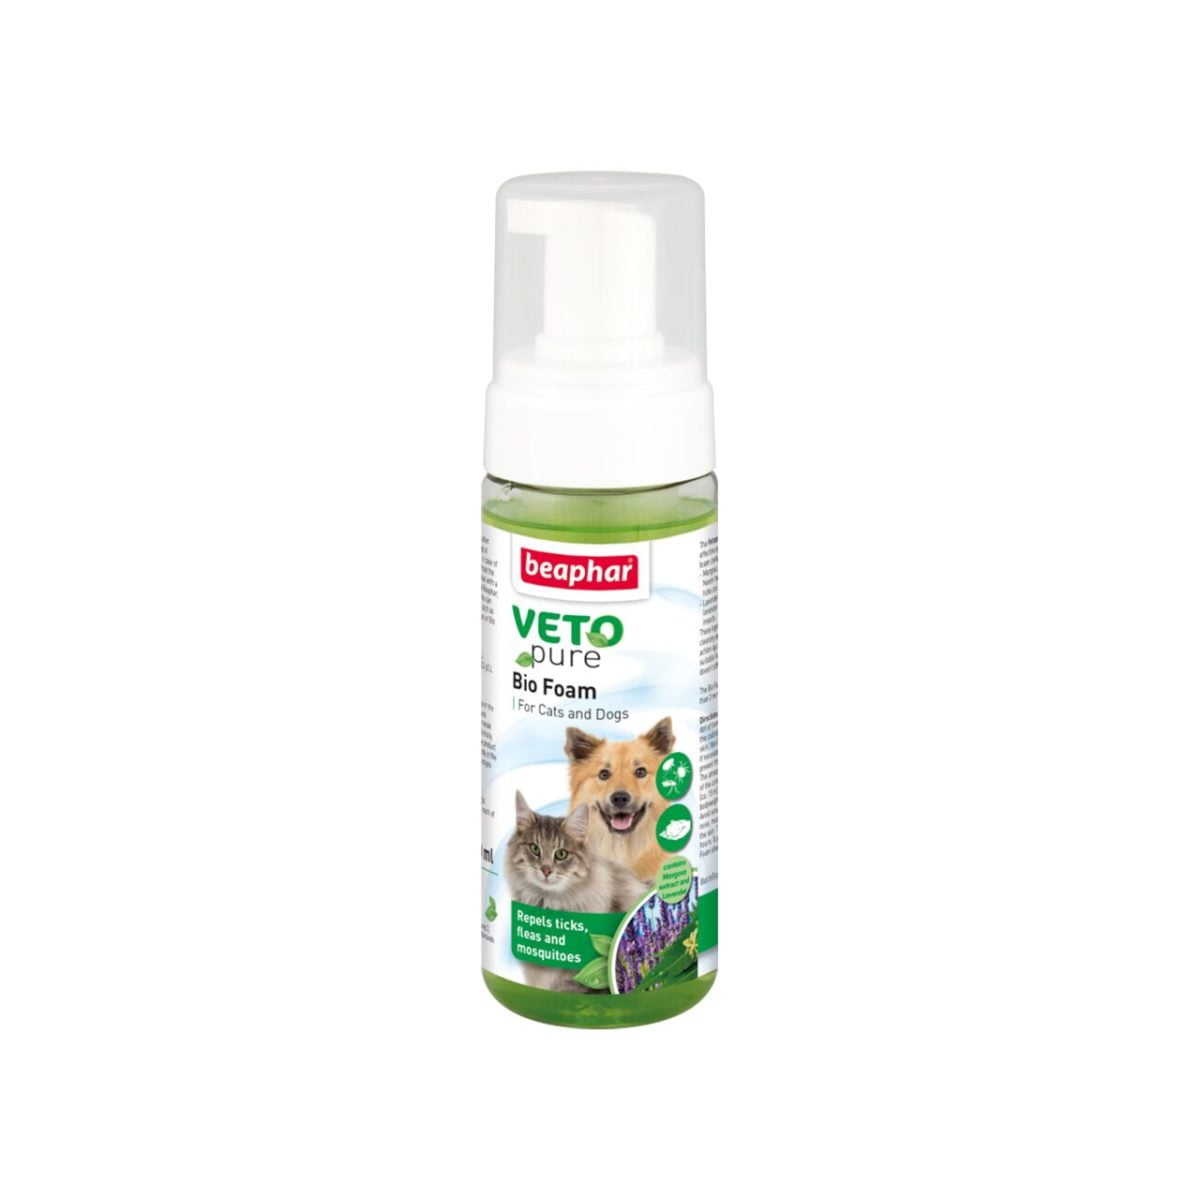 [promo] spuma antiparazitara pentru caini si pisici vetopure beaphar 150ml -10% discount de lansare